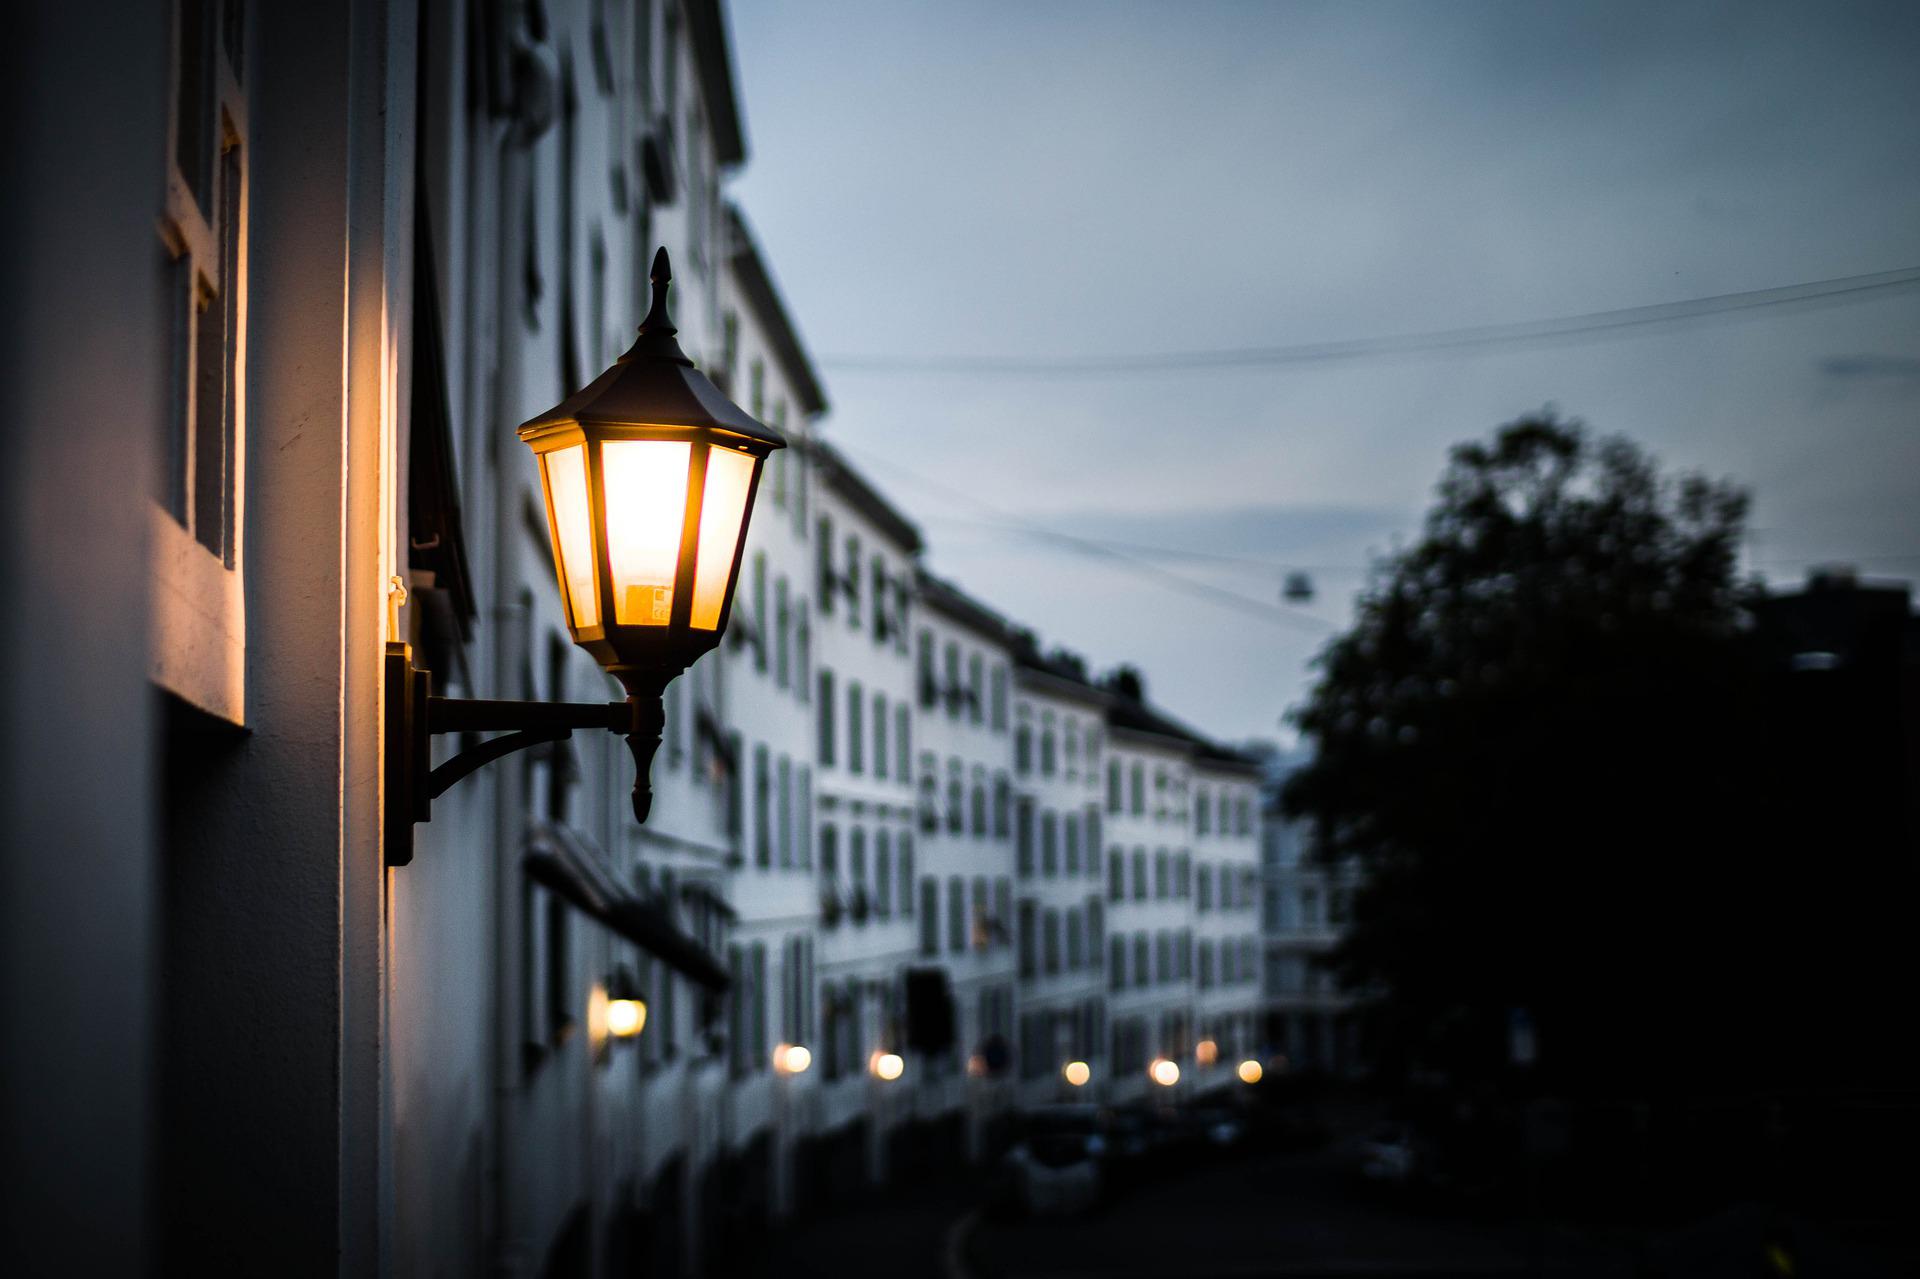 Pouliční osvětlení